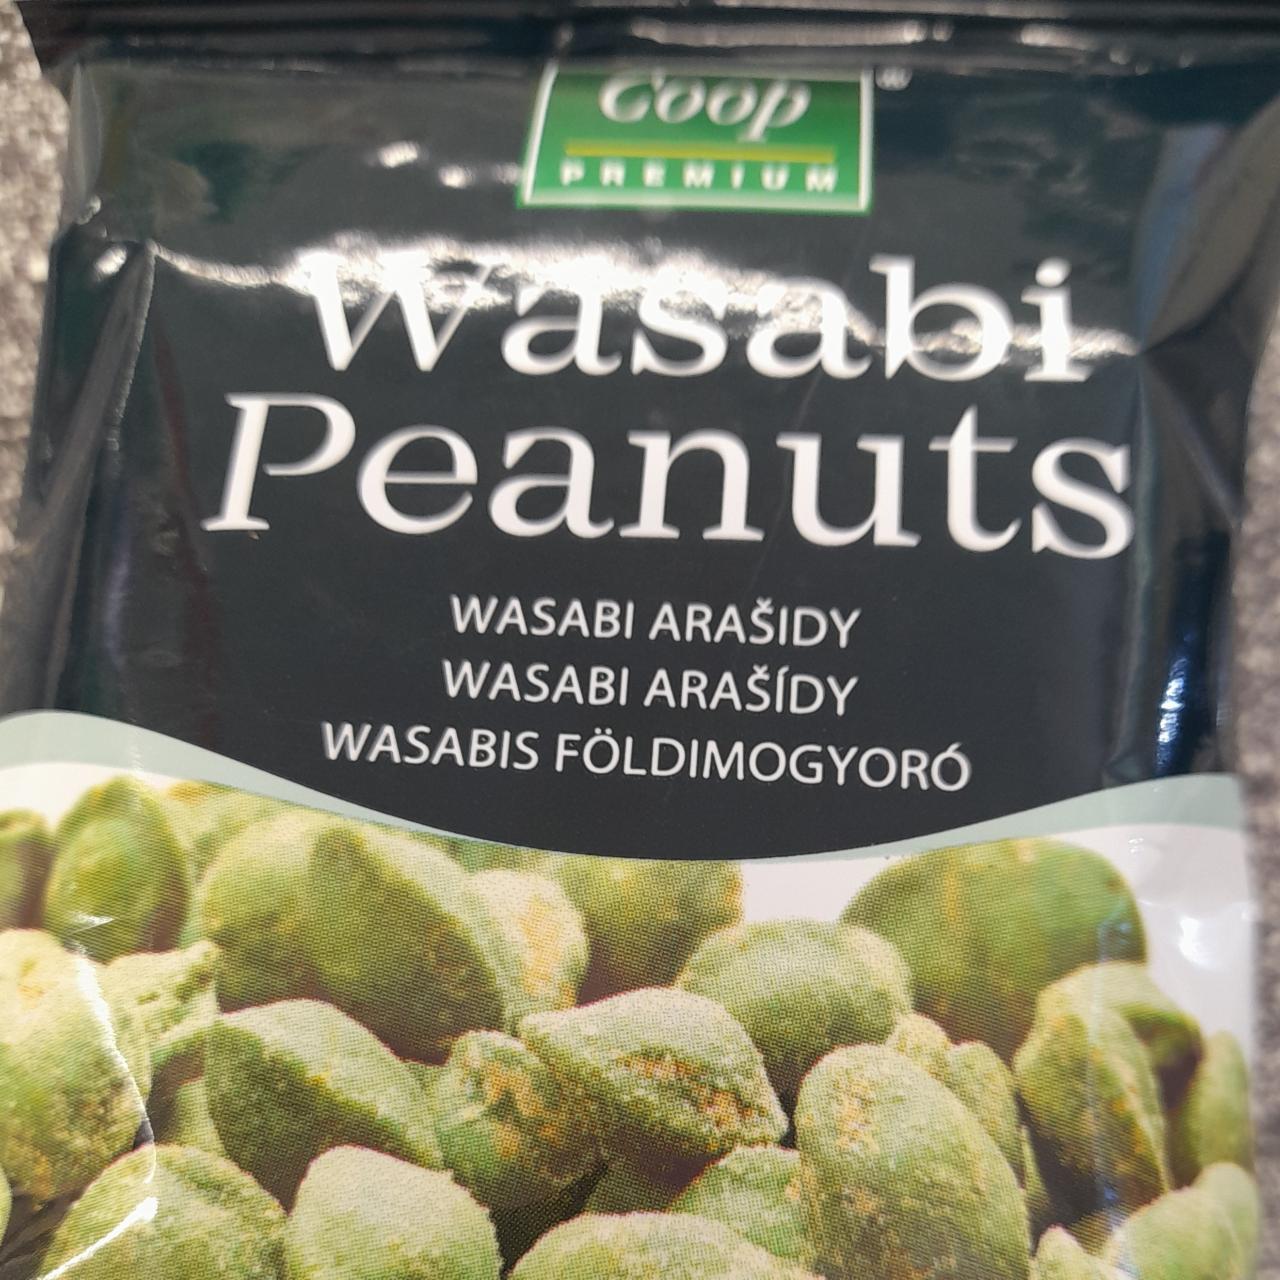 Fotografie - Wasabi Peanuts Coop Premium